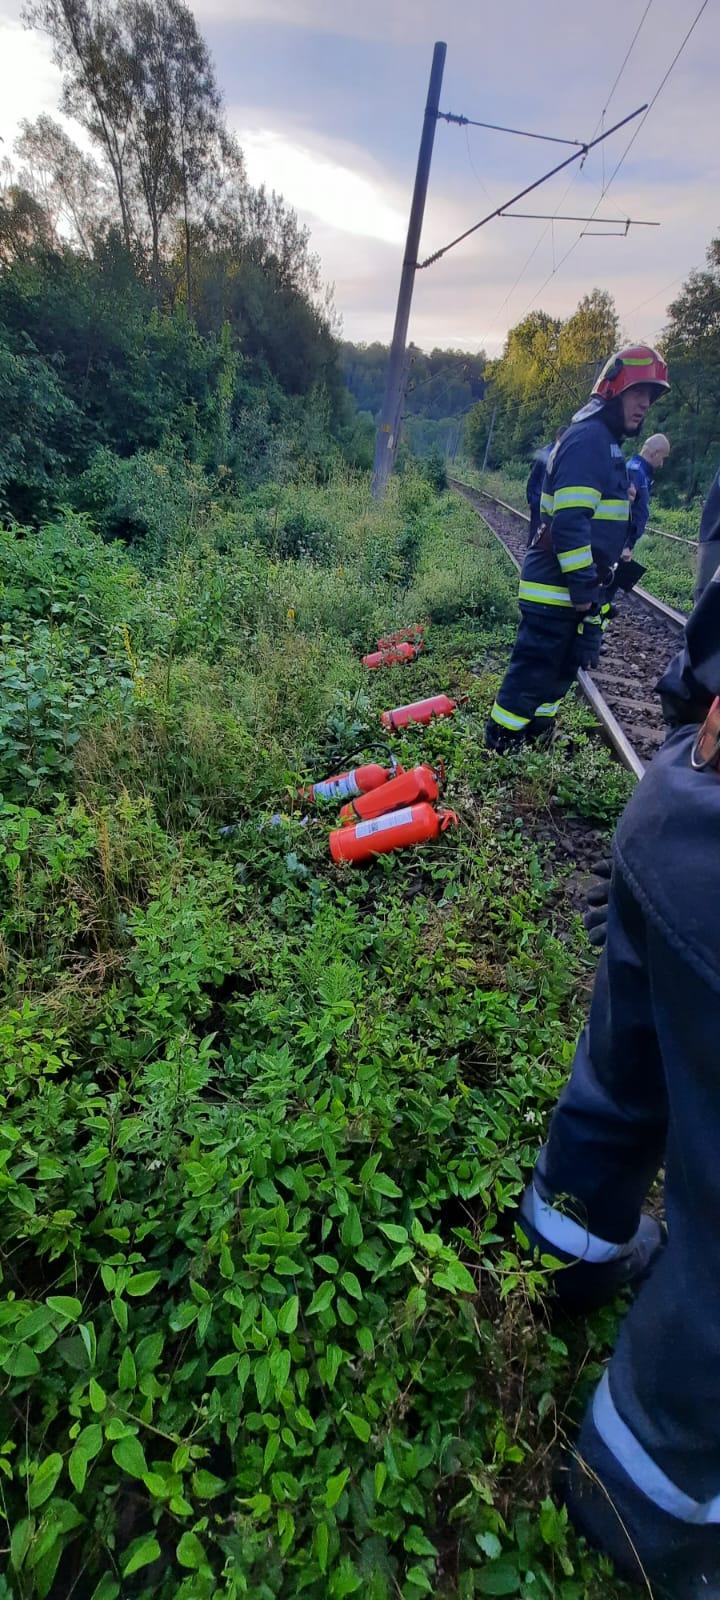 Locomotiva unui marfar a luat foc în Hunedoara